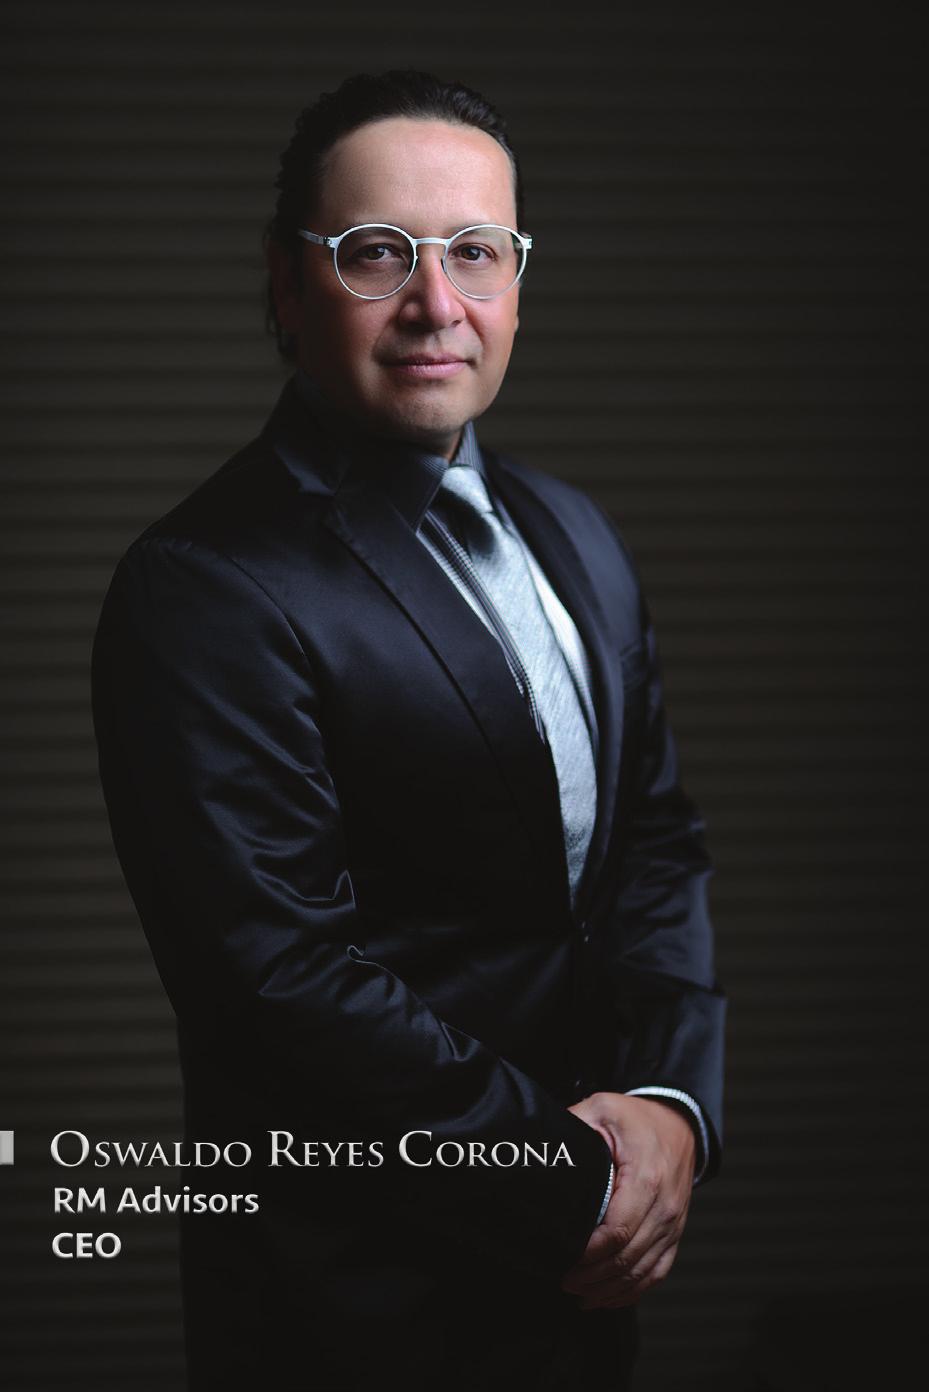 MTRO. OSWALDO REYES CORONA Líder de opinión en México, asesor de negocios en más de 1,000 empresas de forma directa e indirecta desde el año de 1997, cuenta con 64 libros escritos, más de 1,300